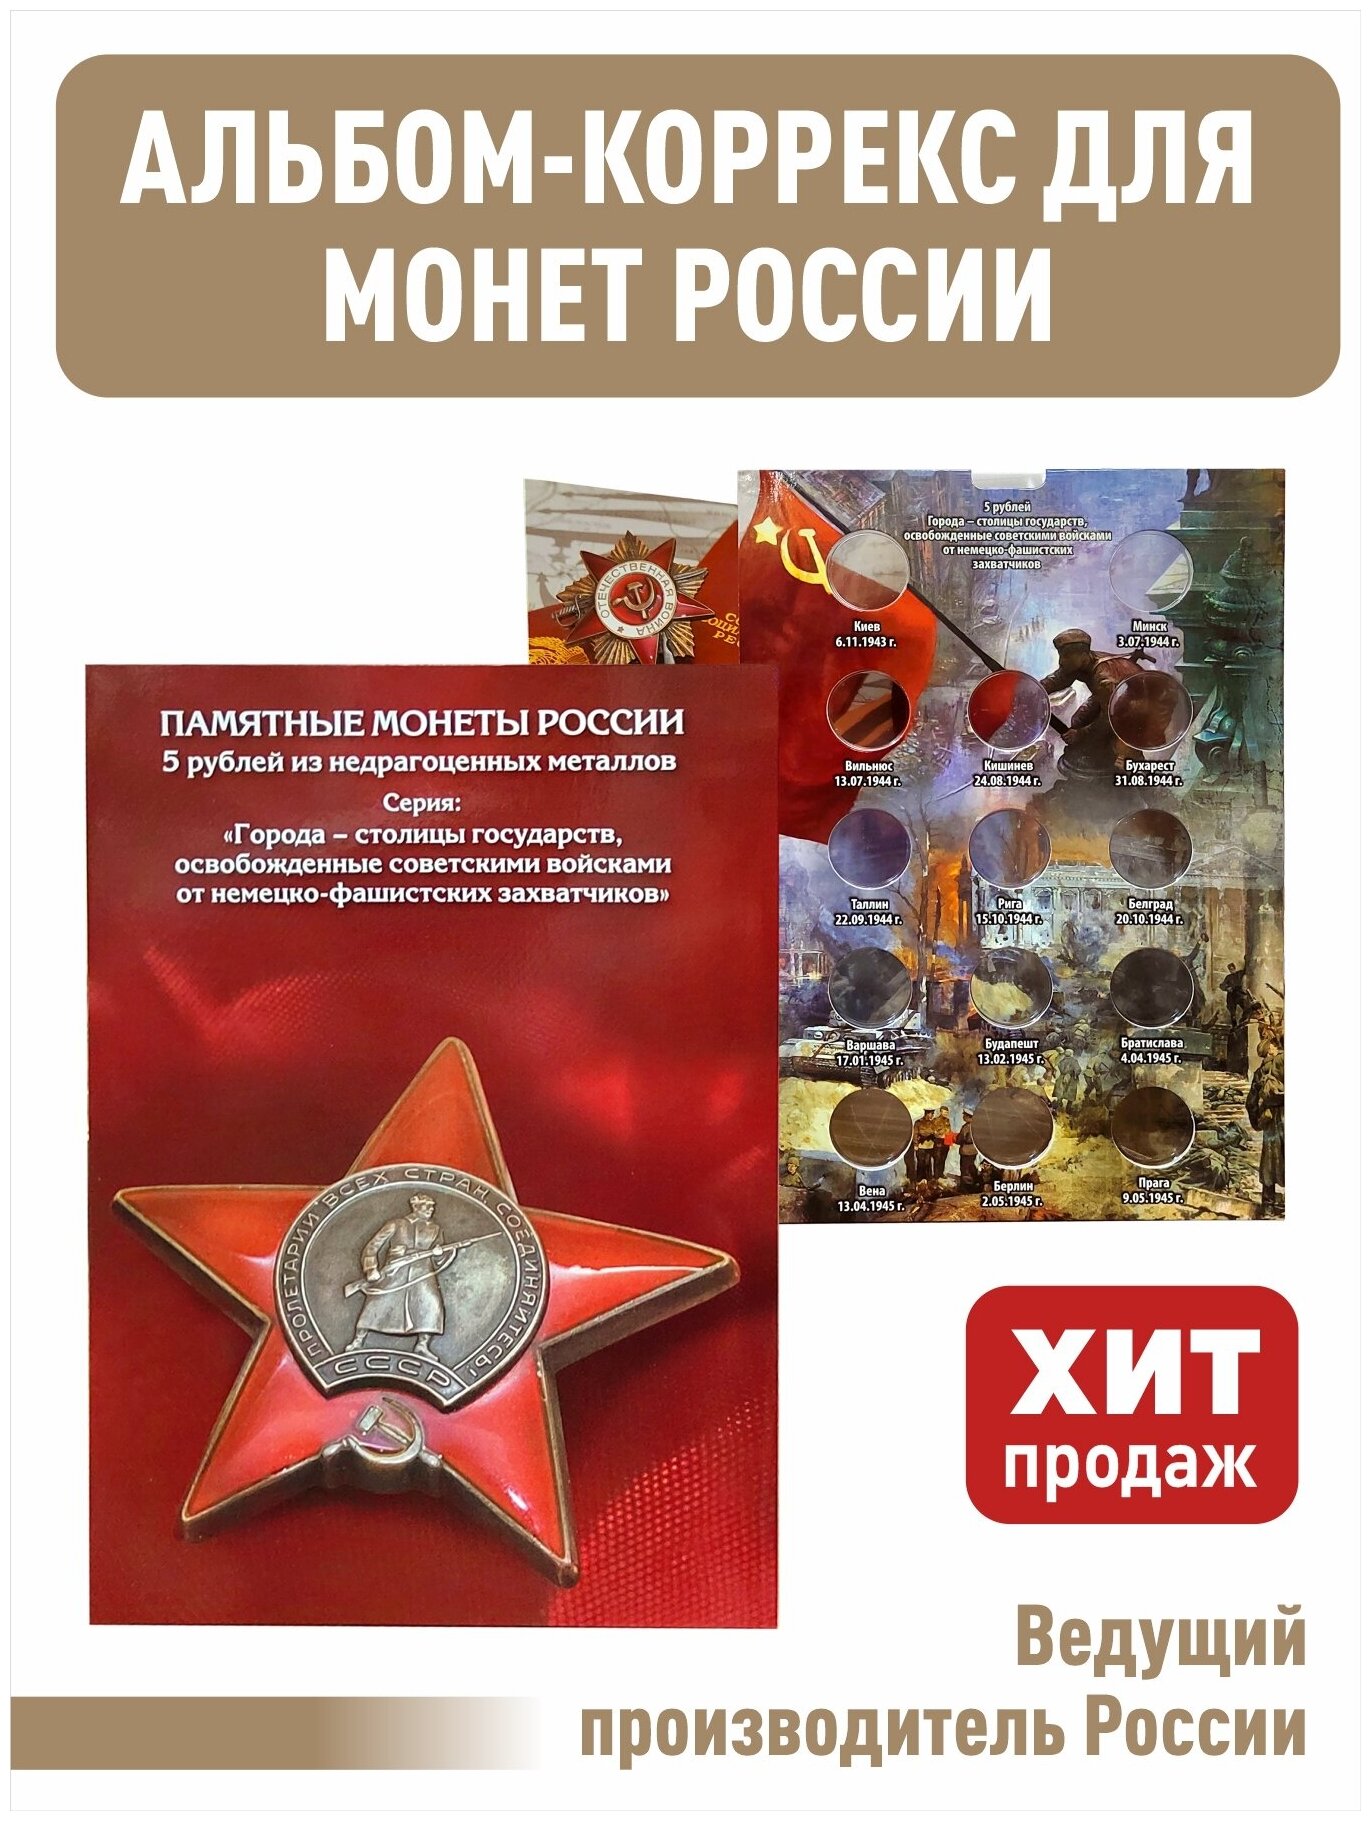 Альбом-коррекс блистер для 5-рублевых монет серии "Города - столицы государств, освобожденные советскими войсками от немецко-фашистских захватчиков".